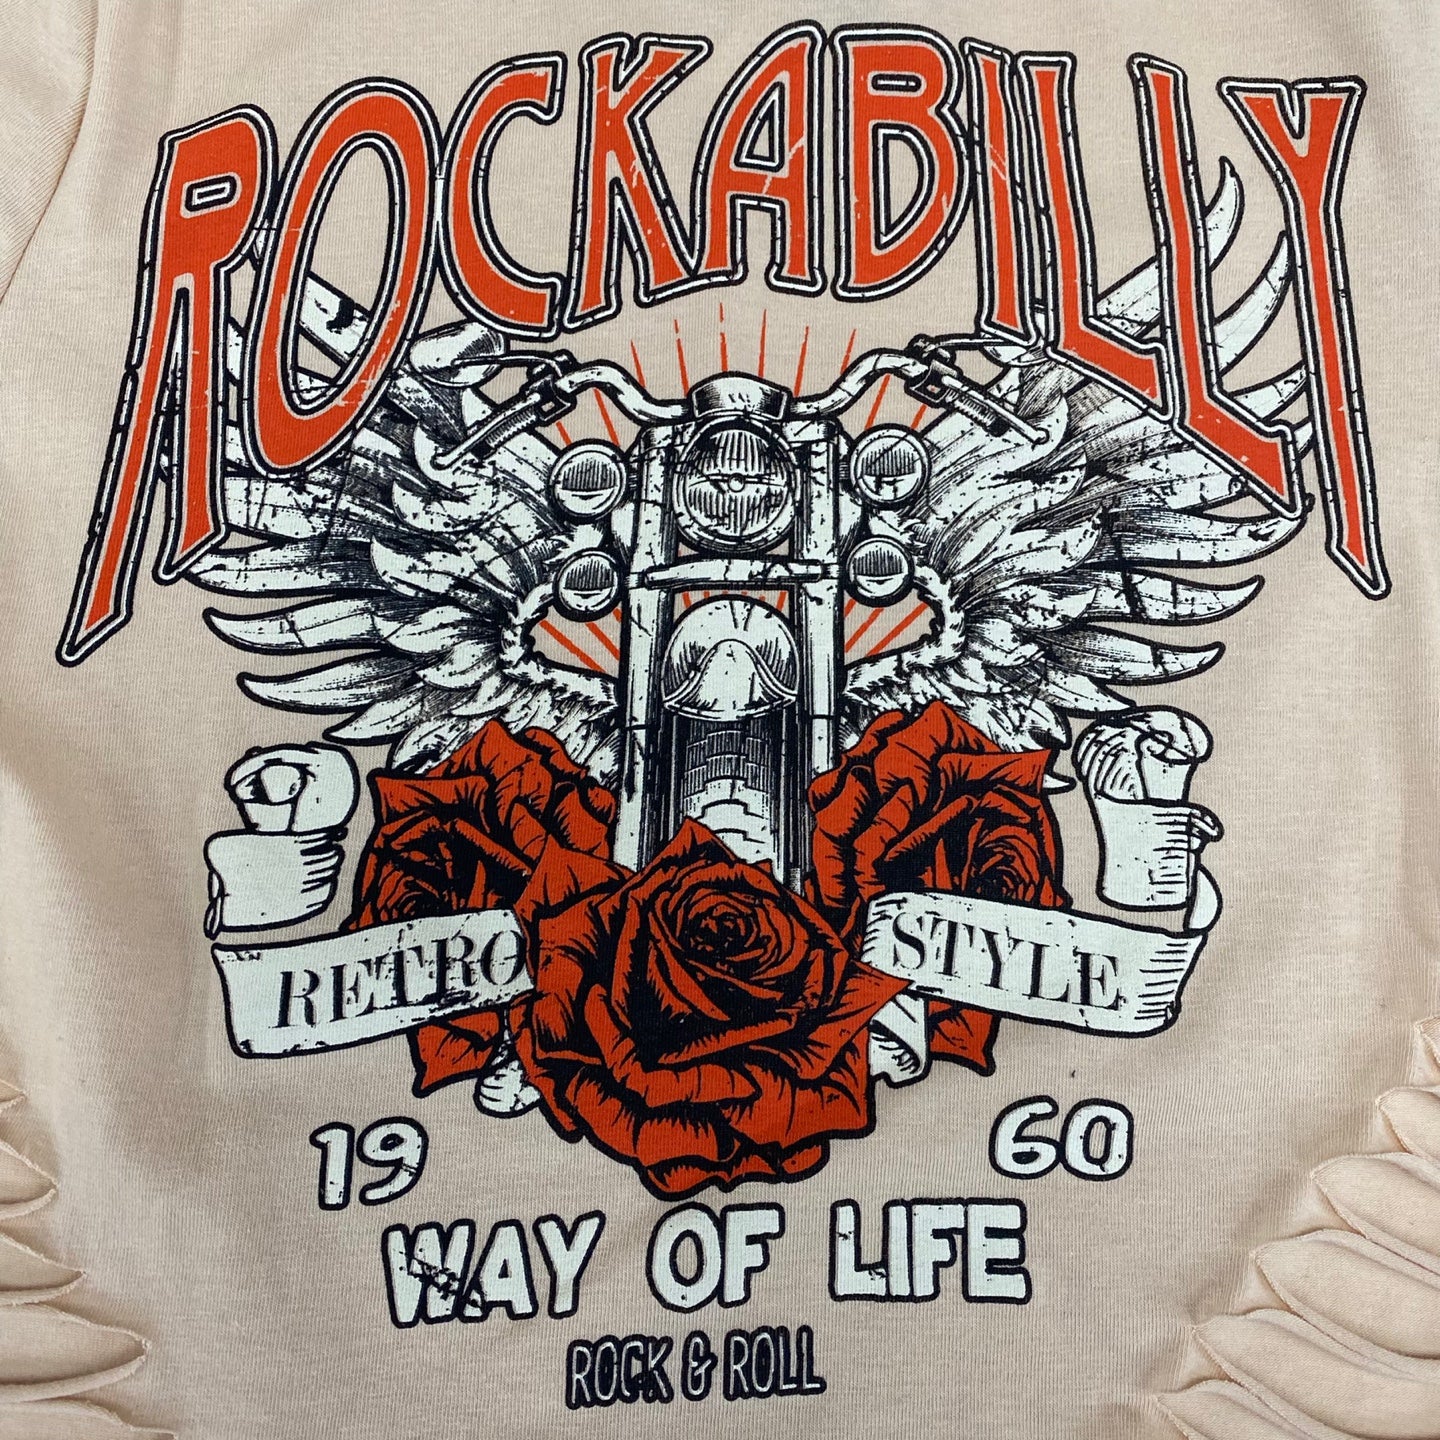 Women's Rockabilly Graphic Crop Top T-Shirt